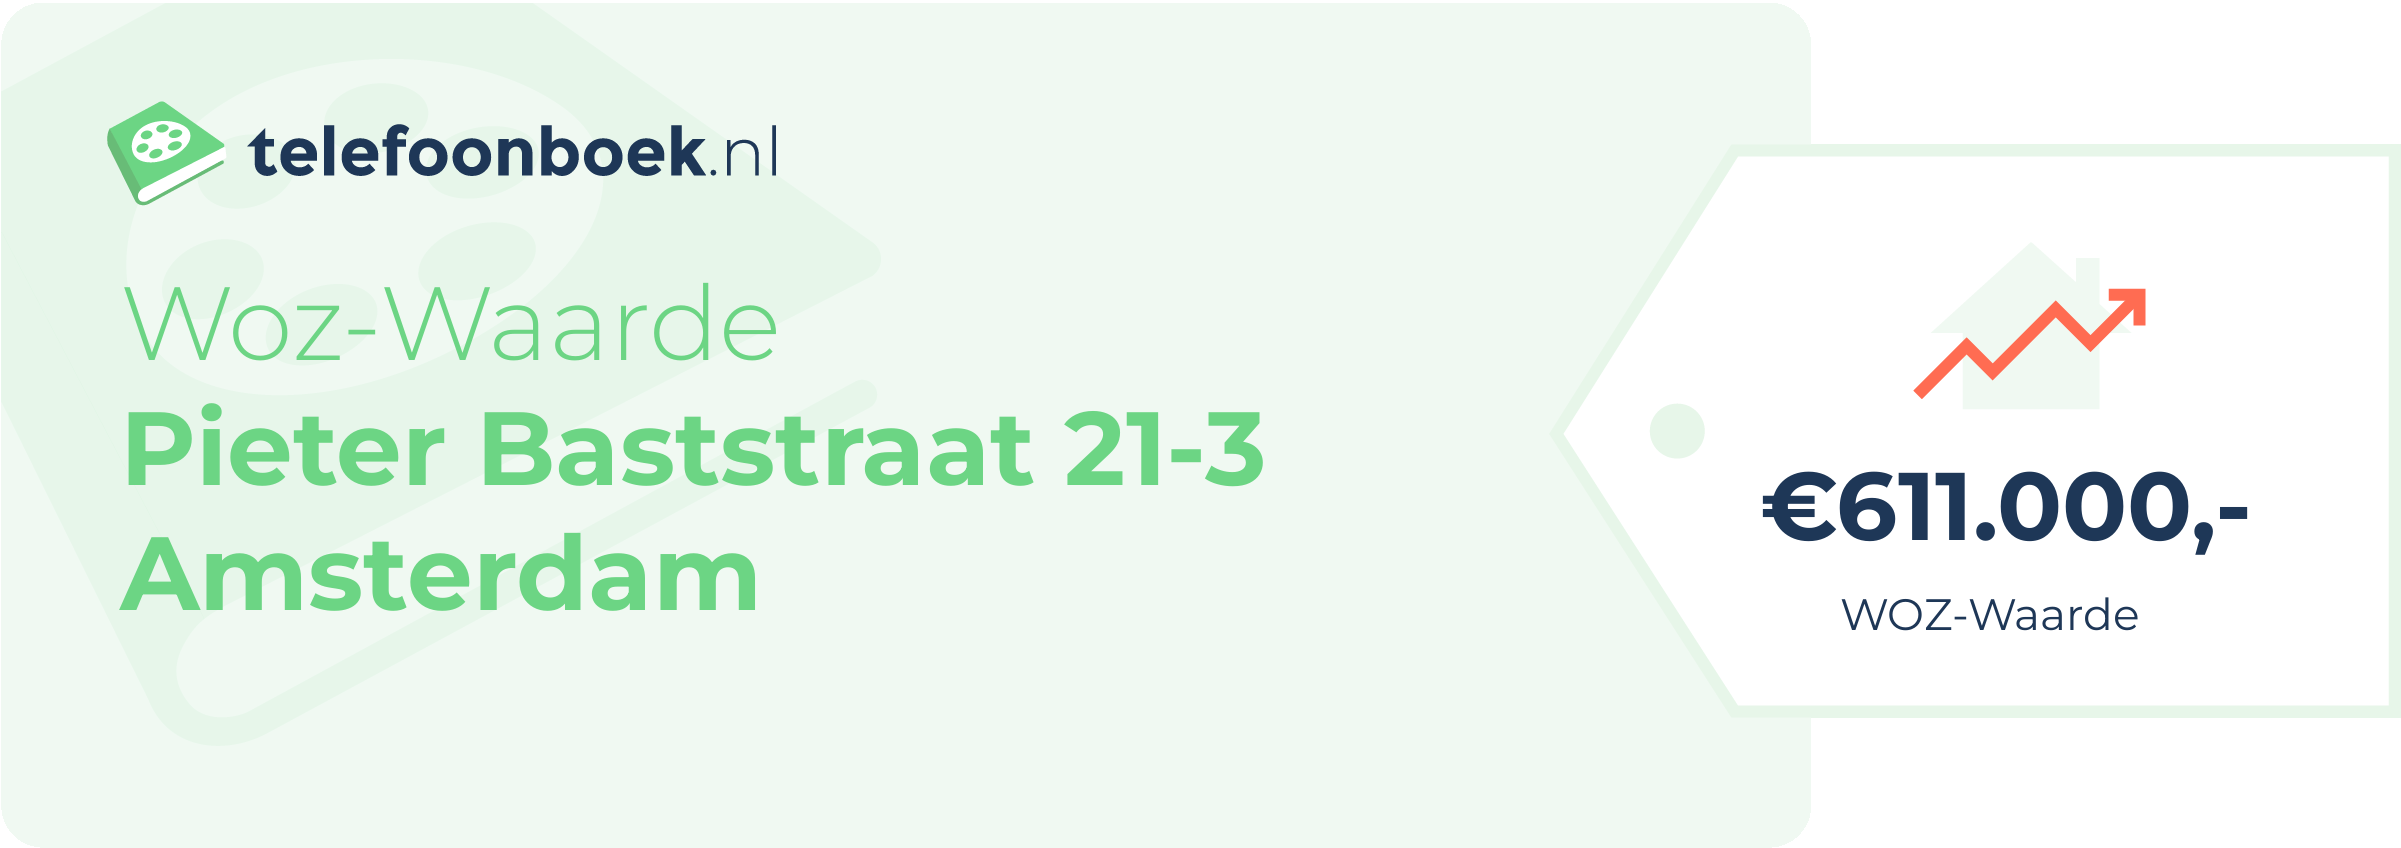 WOZ-waarde Pieter Baststraat 21-3 Amsterdam